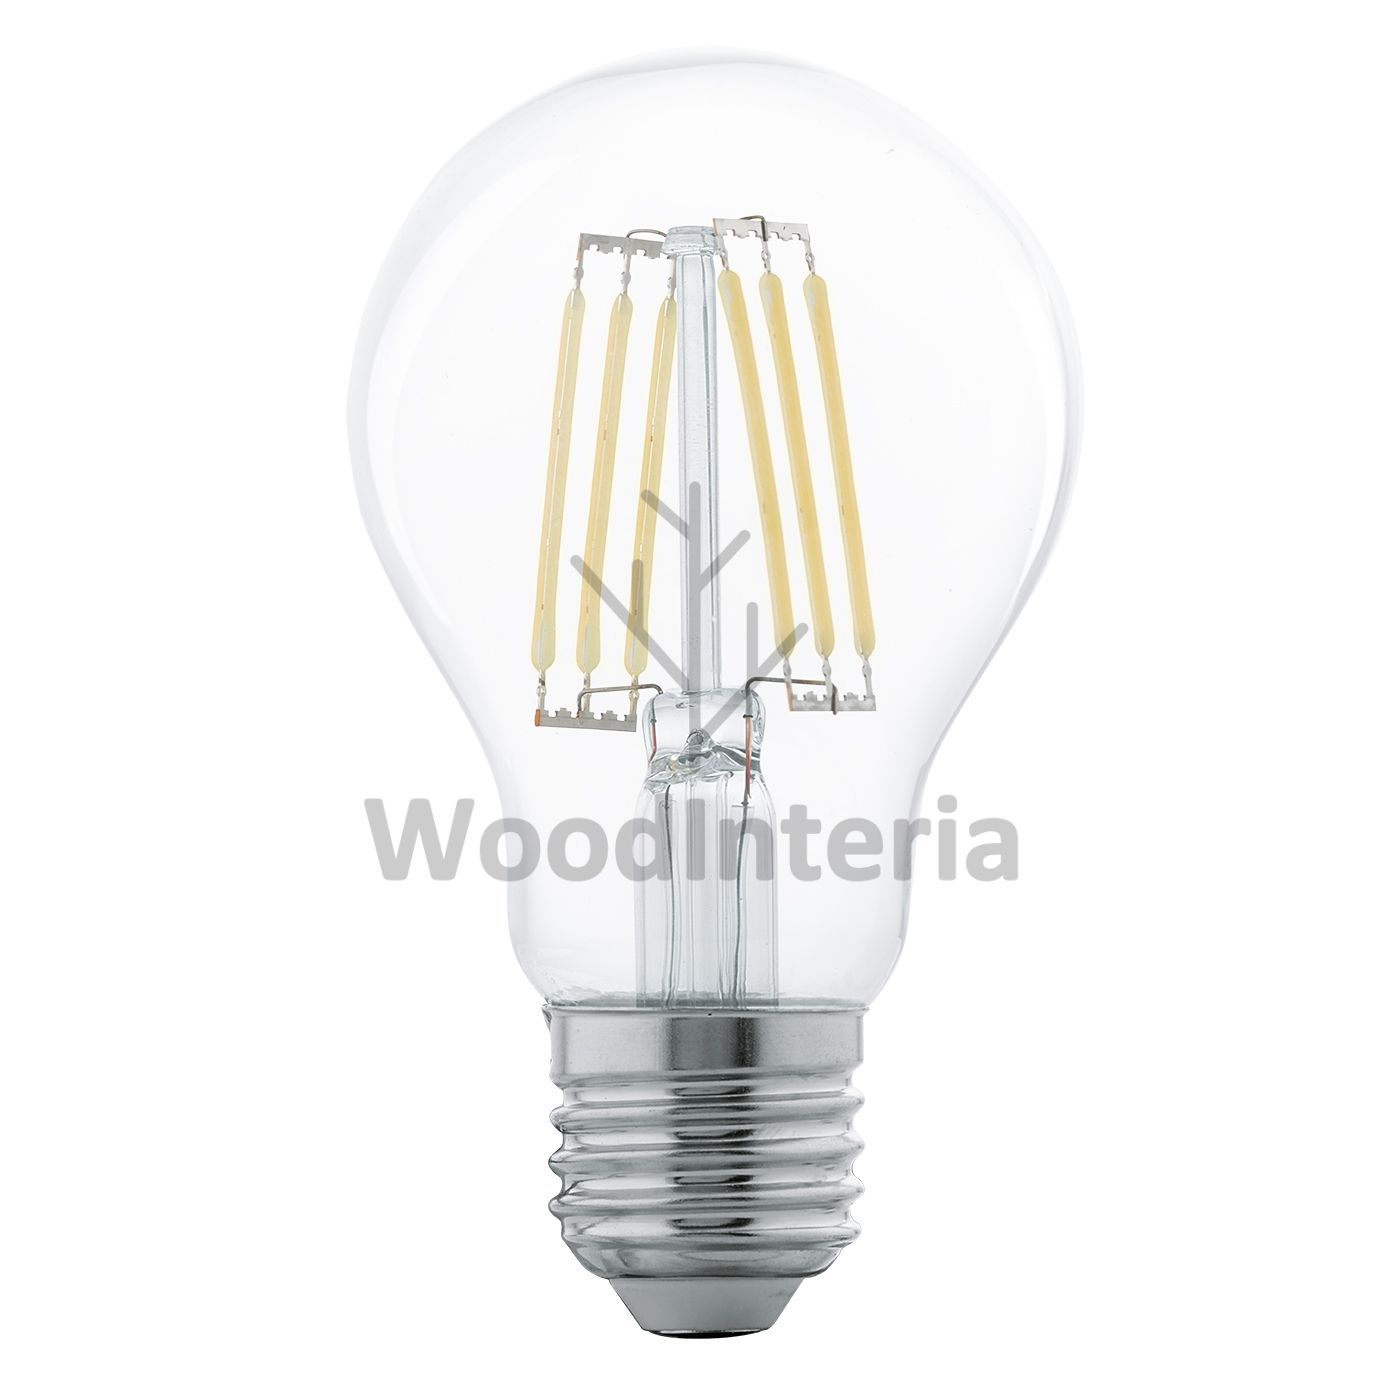 фото лампочка clean bulb #5 в скандинавском интерьере лофт эко | WoodInteria